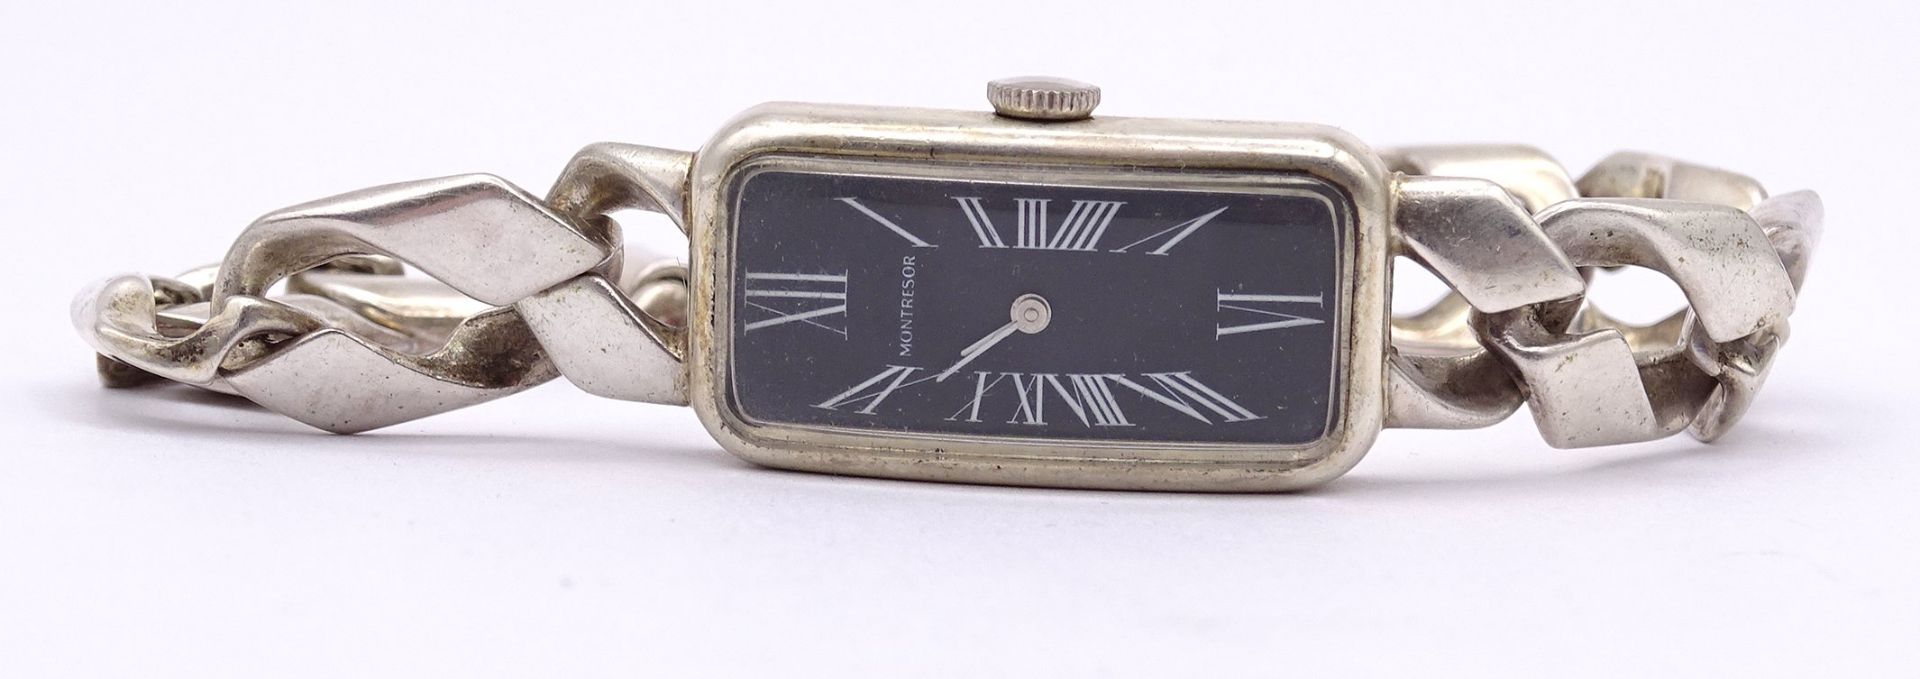 Damen Armbanduhr Montresor, Vollsilber 835 / 925, mechanisch, Werk läuft, Gehäuse 15x30mm, ges. Gew